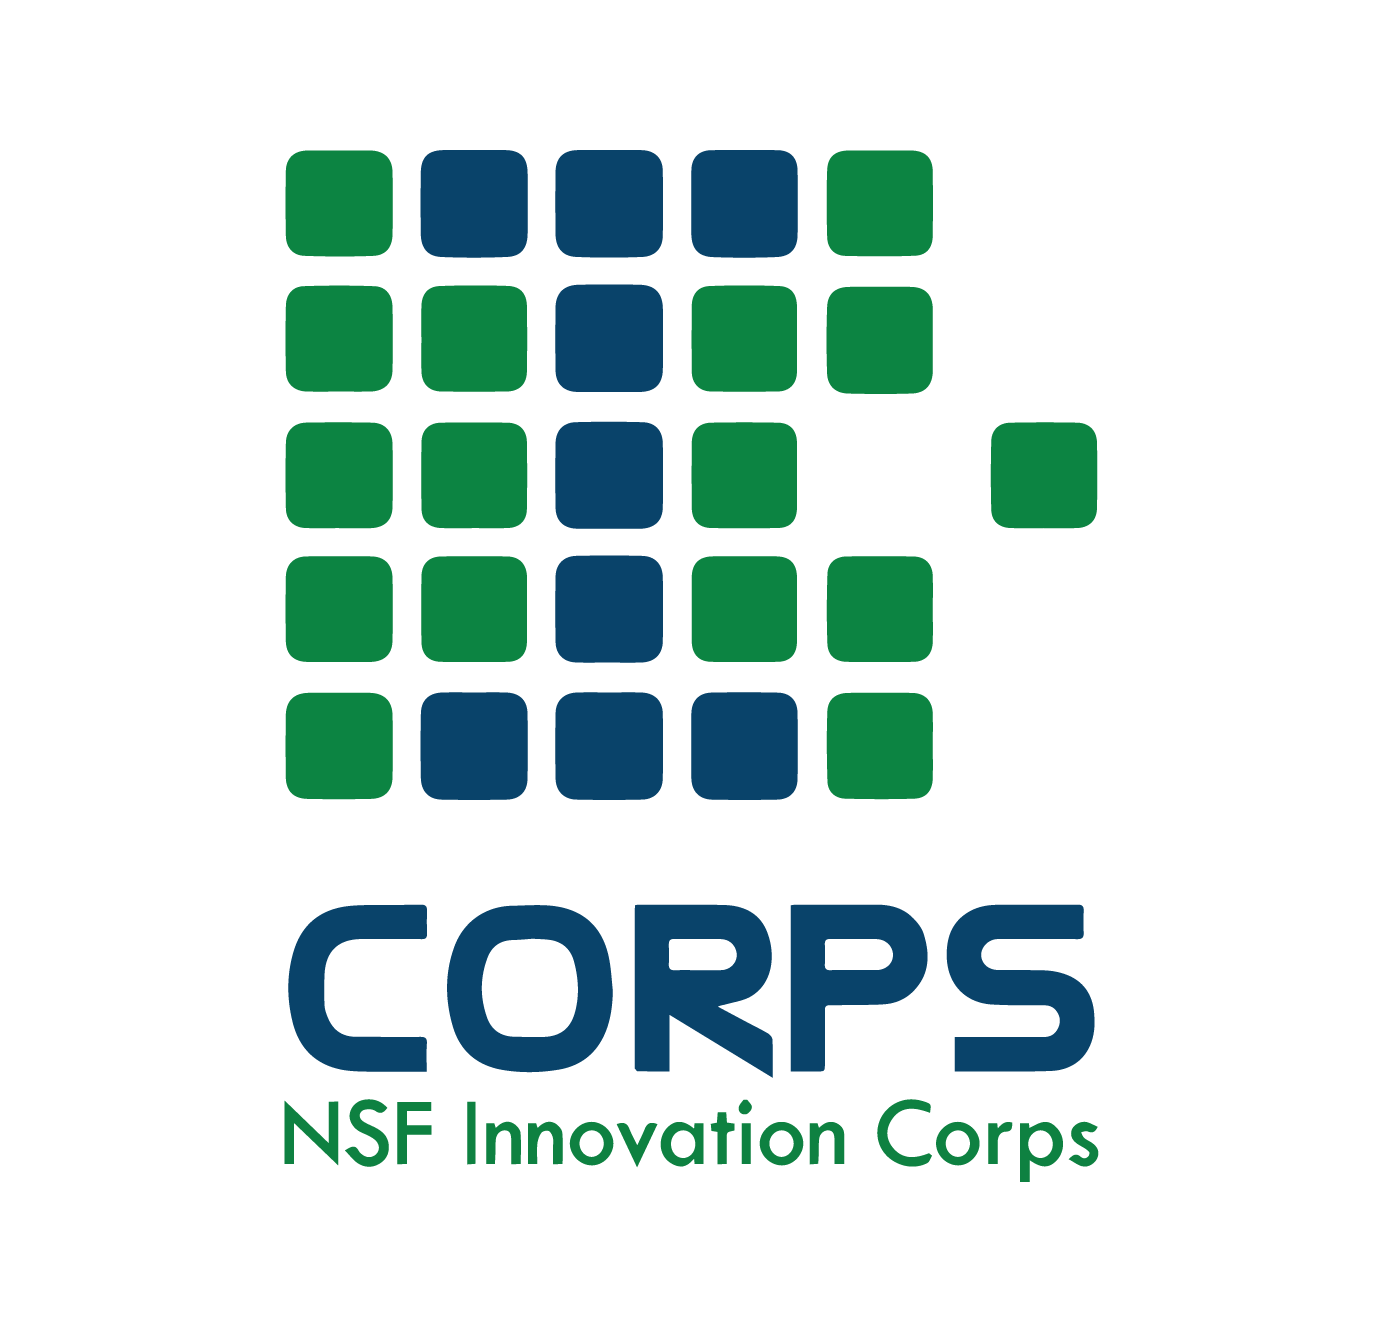 CPP NSF I-Corps logo